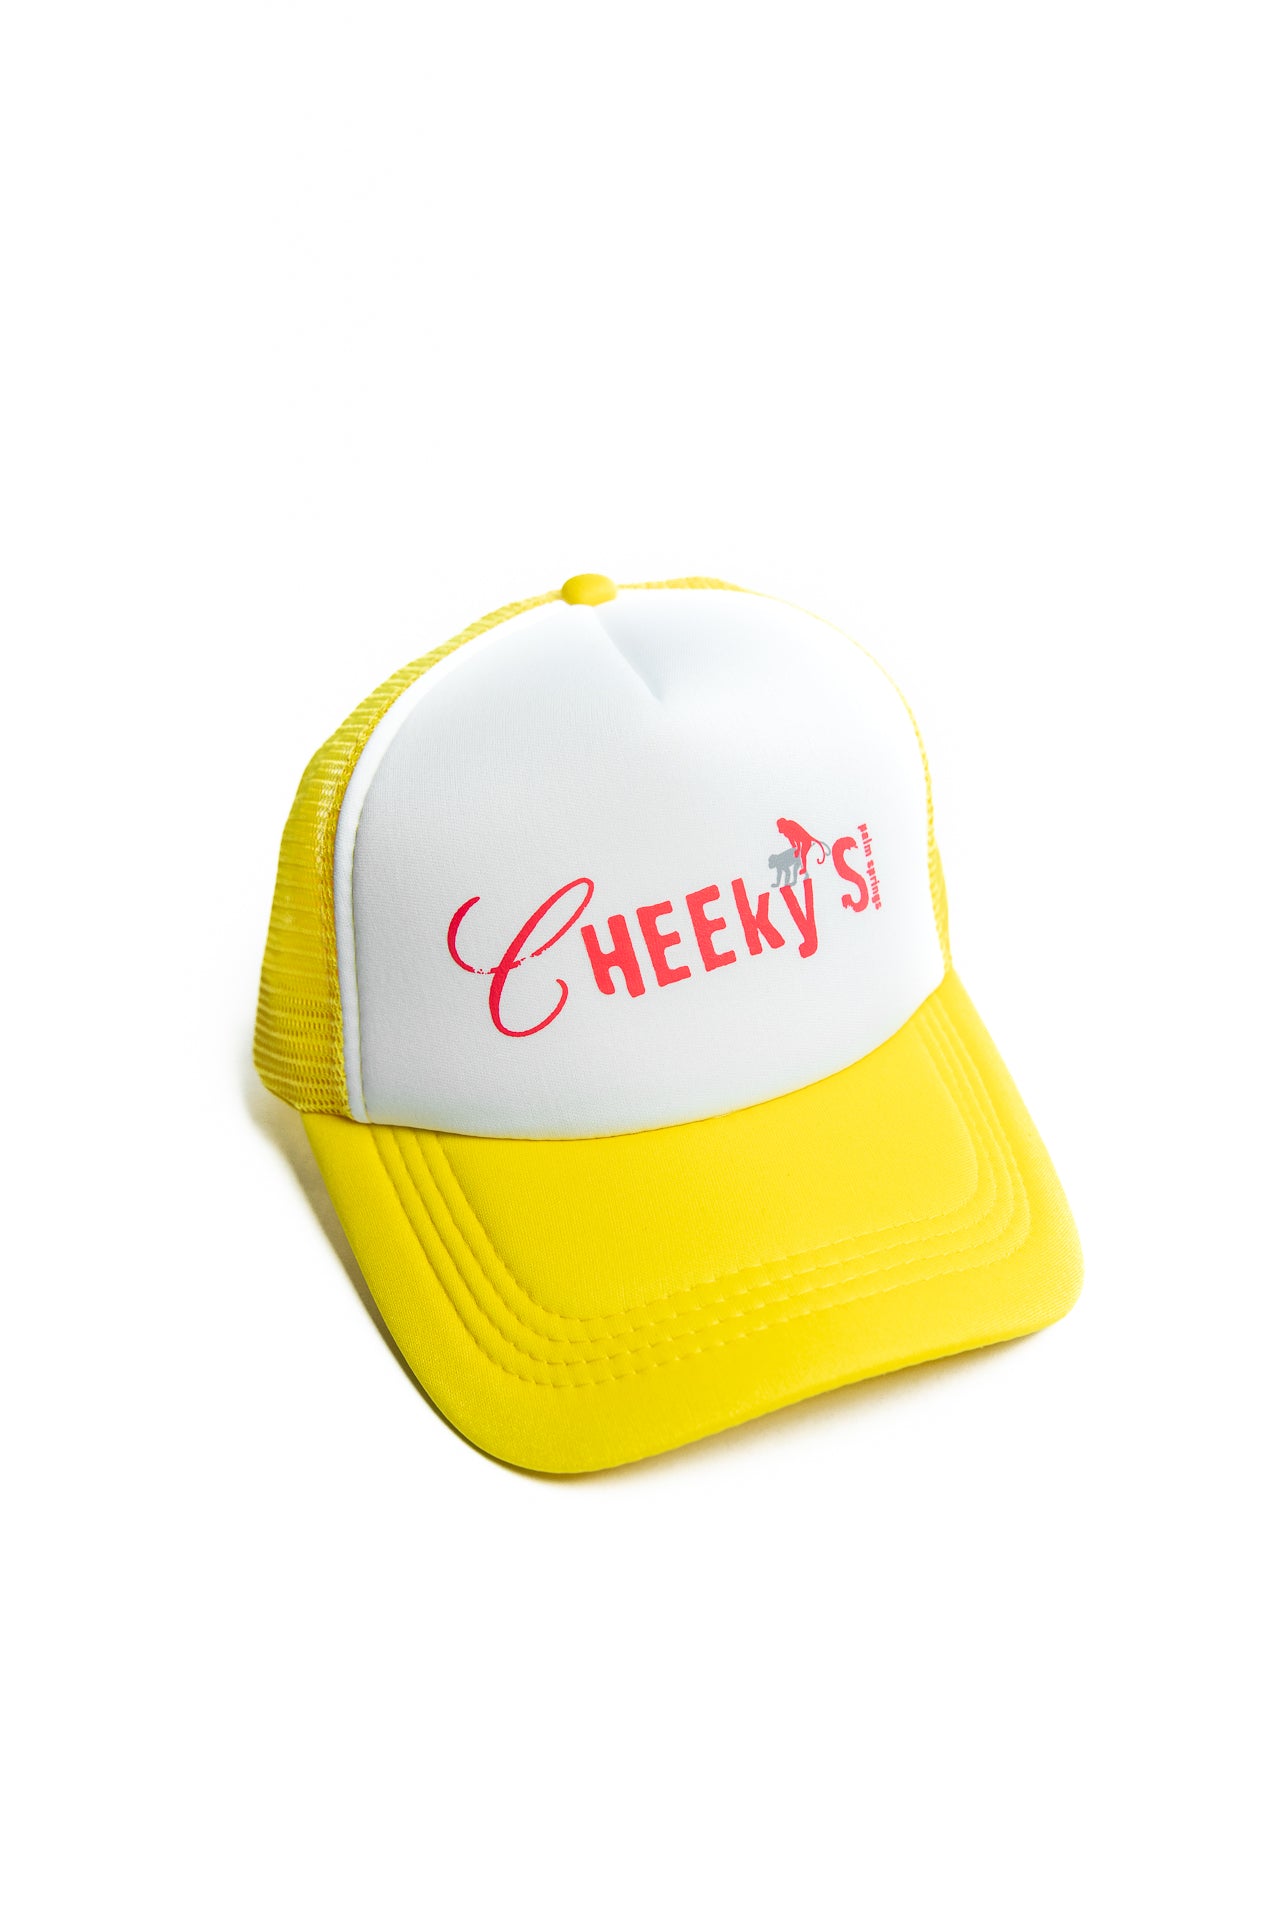 Cheeky's Leapfrog Trucker Hat